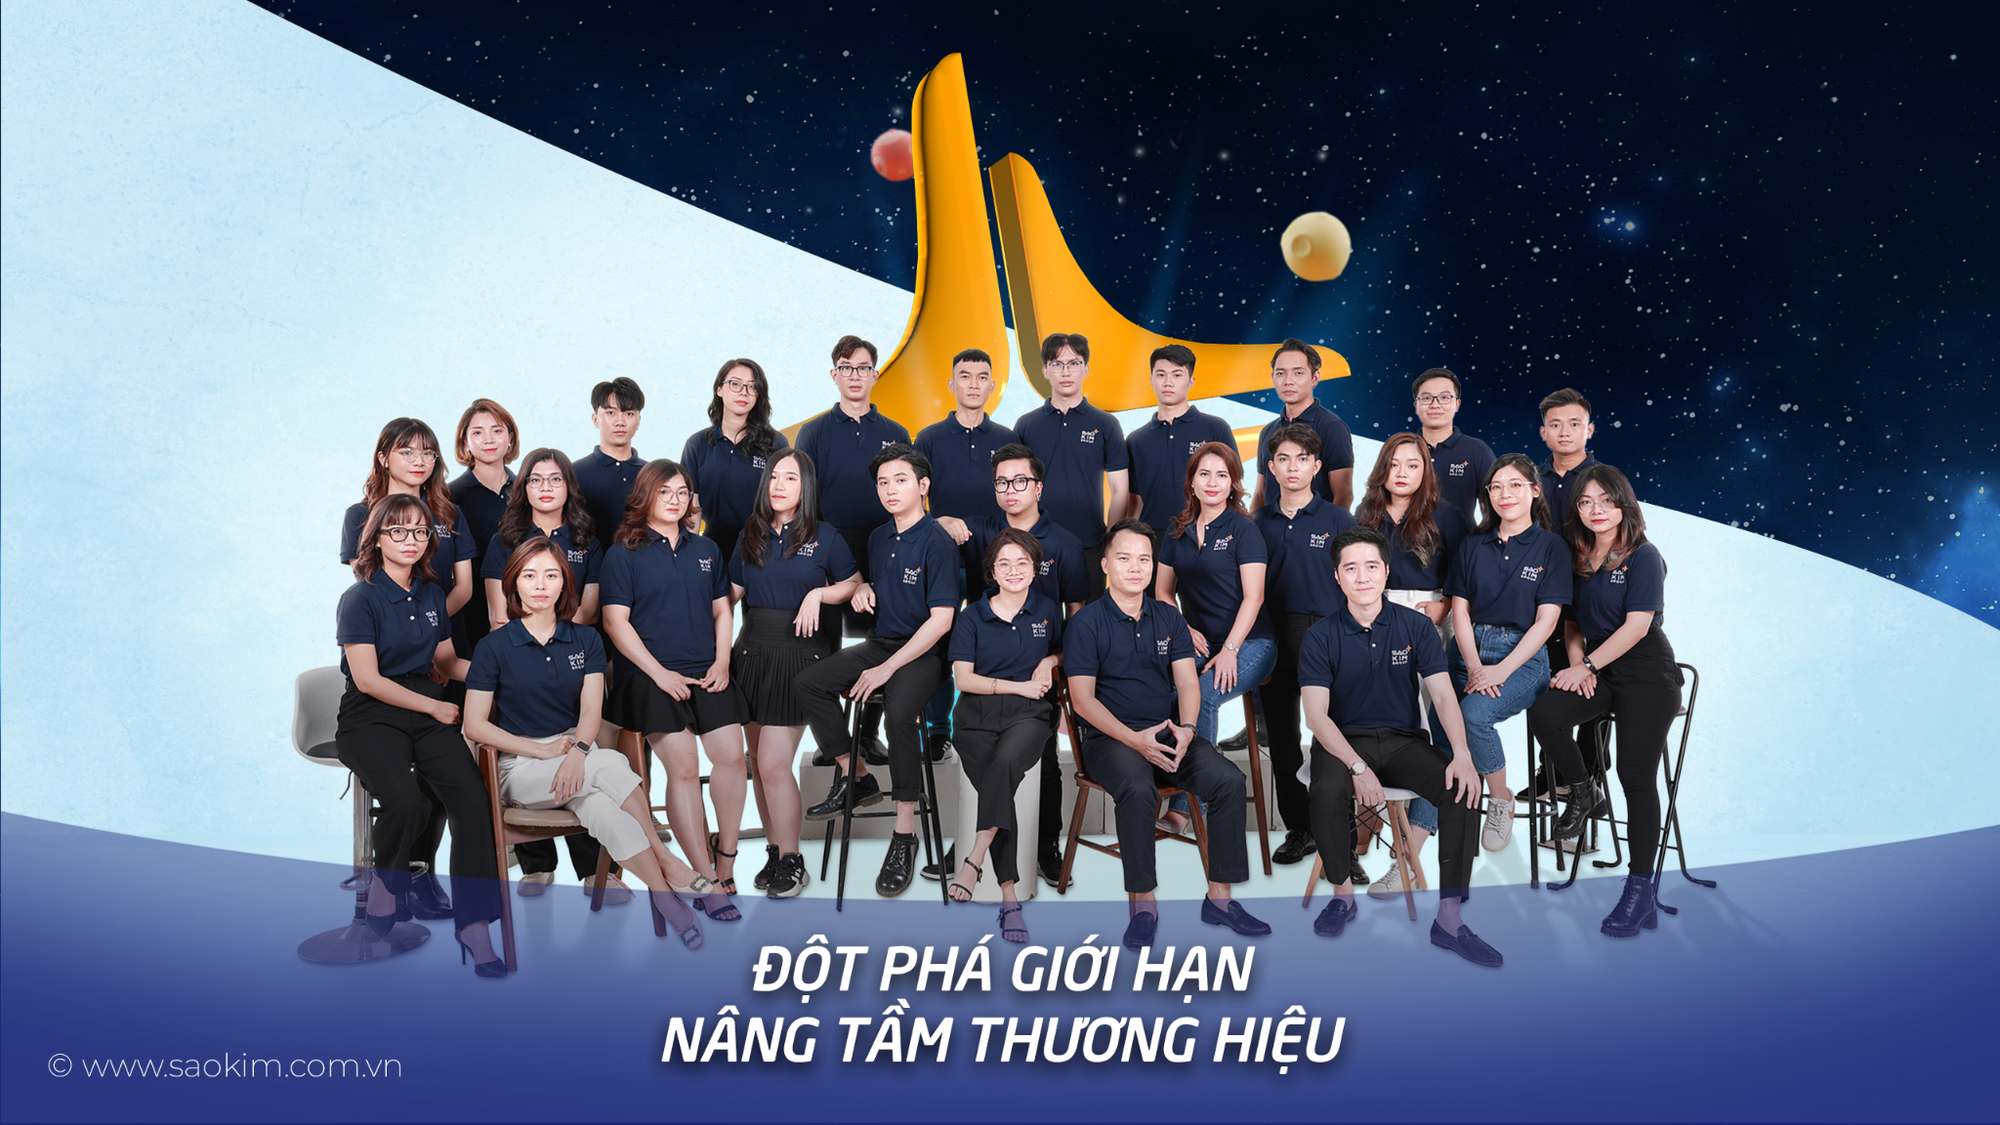 Sao Kim Branding - 15 năm nâng tầm thương hiệu Việt - Ảnh 3.